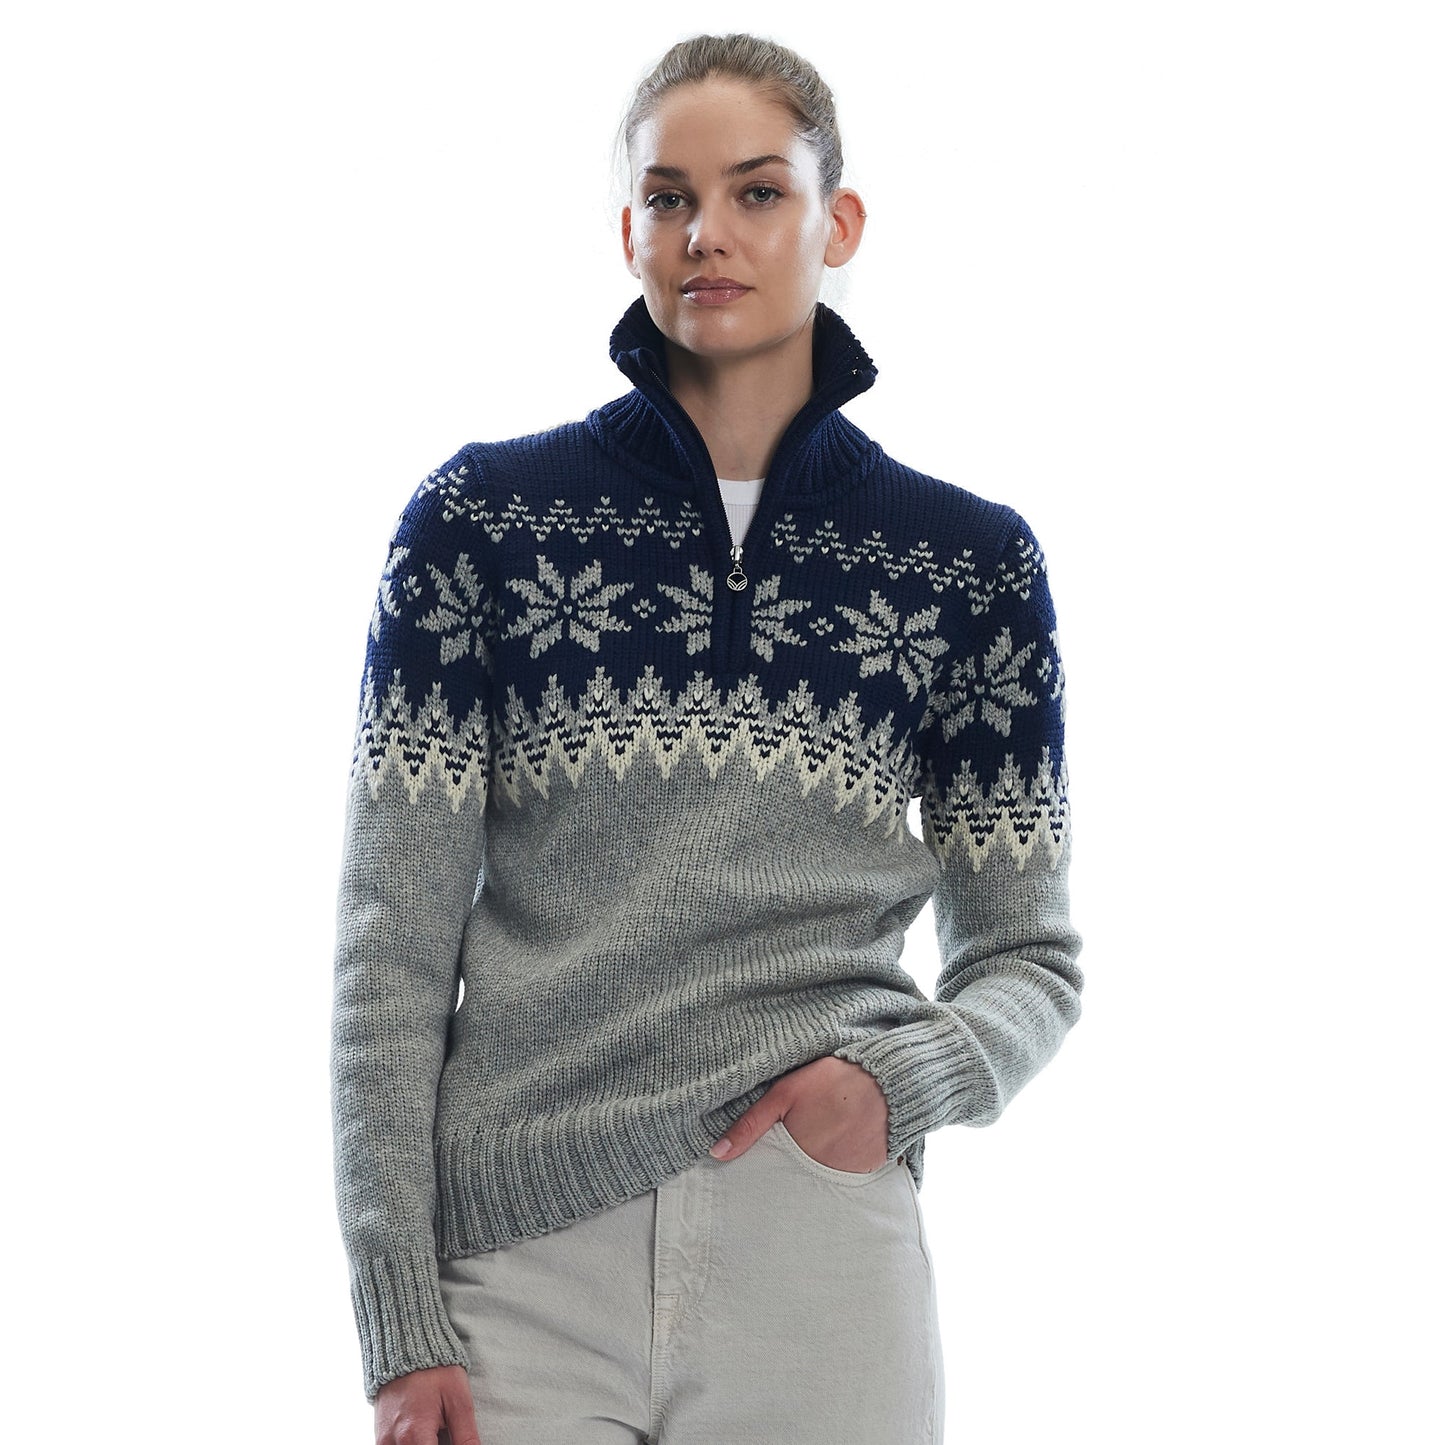 Myking Sweater - Women's